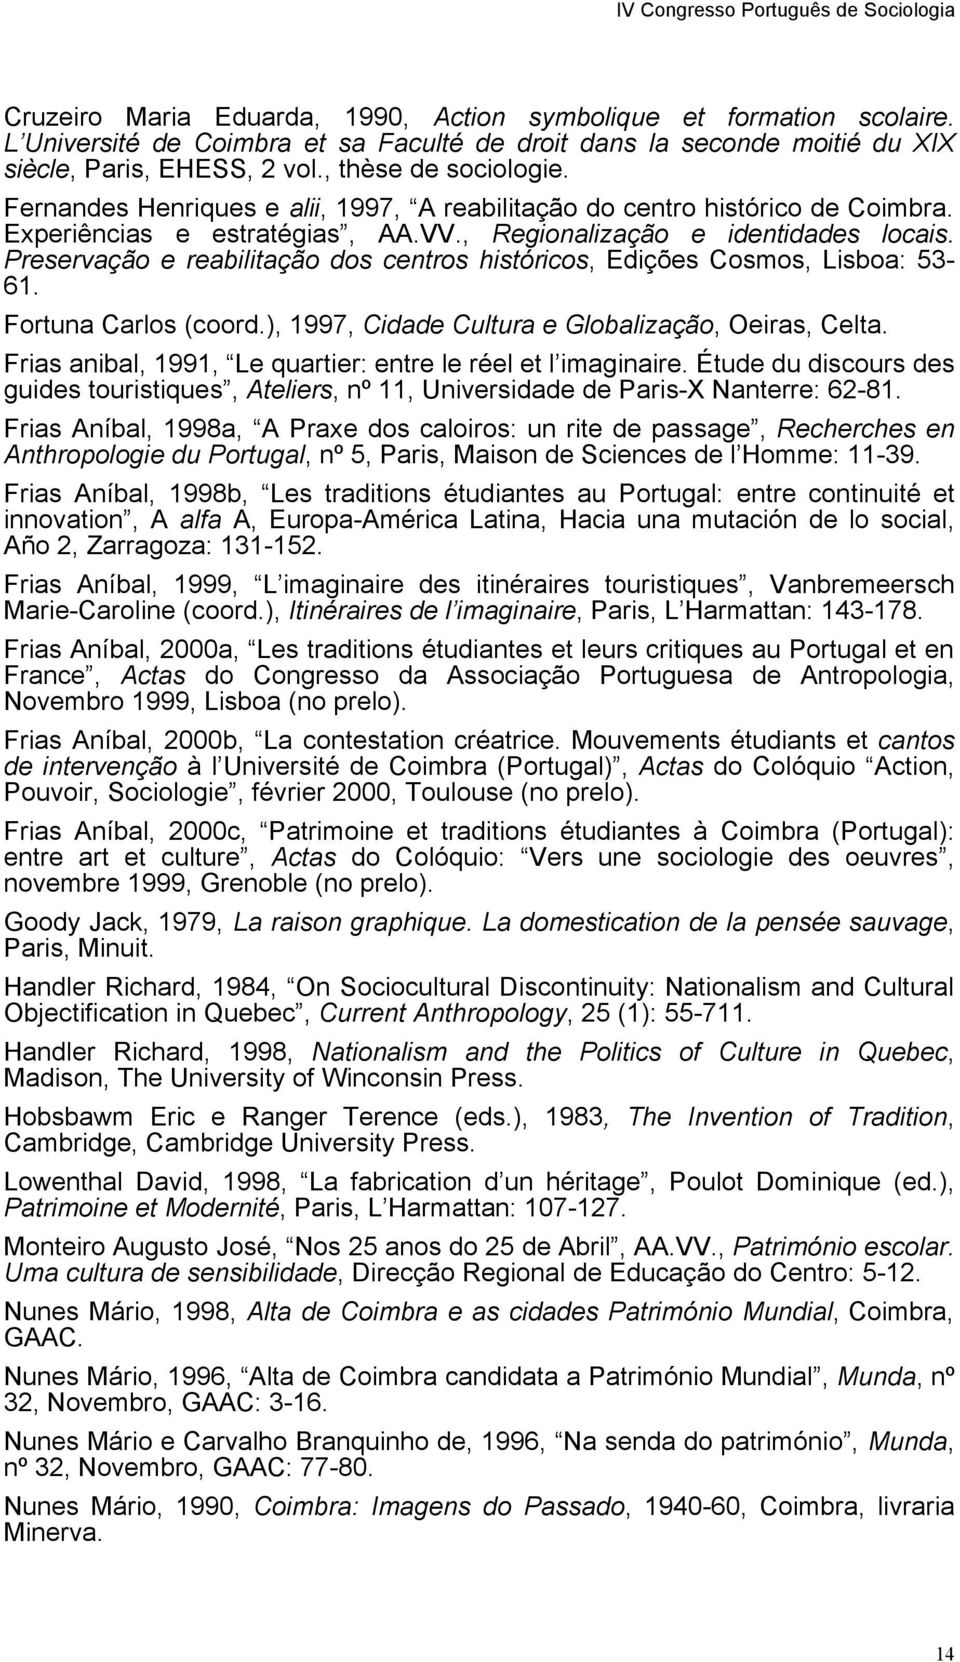 Preservação e reabilitação dos centros históricos, Edições Cosmos, Lisboa: 53-61. Fortuna Carlos (coord.), 1997, Cidade Cultura e Globalização, Oeiras, Celta.